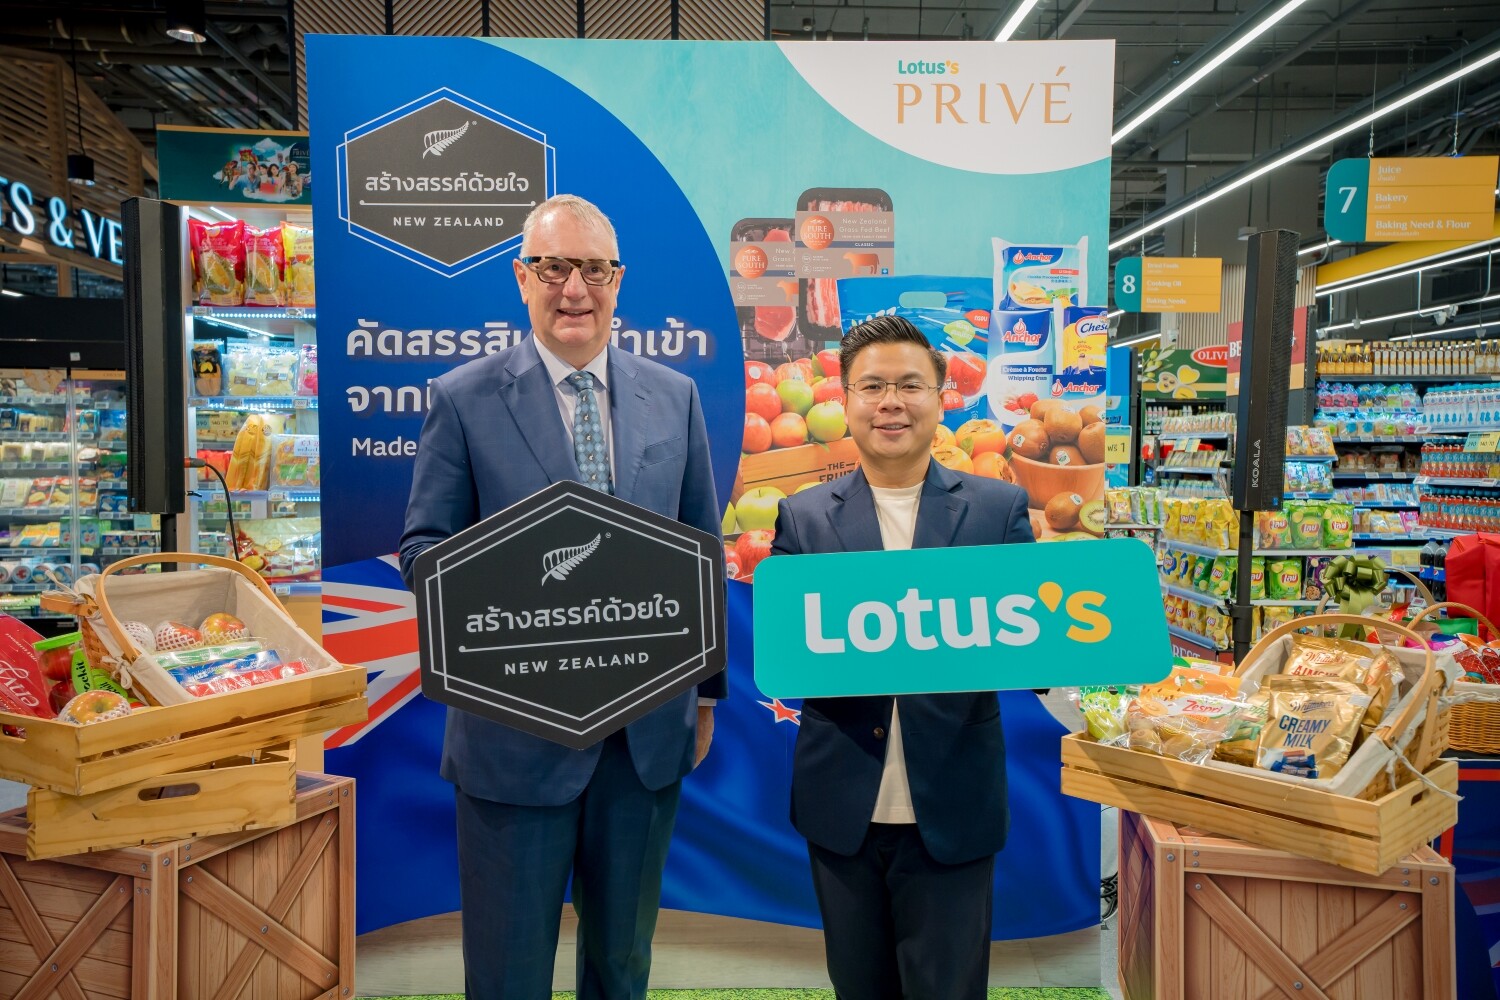 โลตัส จัดงานมหกรรม "Made with Care New Zealand" คัดสรรสินค้านำเข้าจากนิวซีแลนด์ ส่งมอบอาหารสดคุณภาพสูงให้คนไทย ในราคาที่เอื้อมถึง